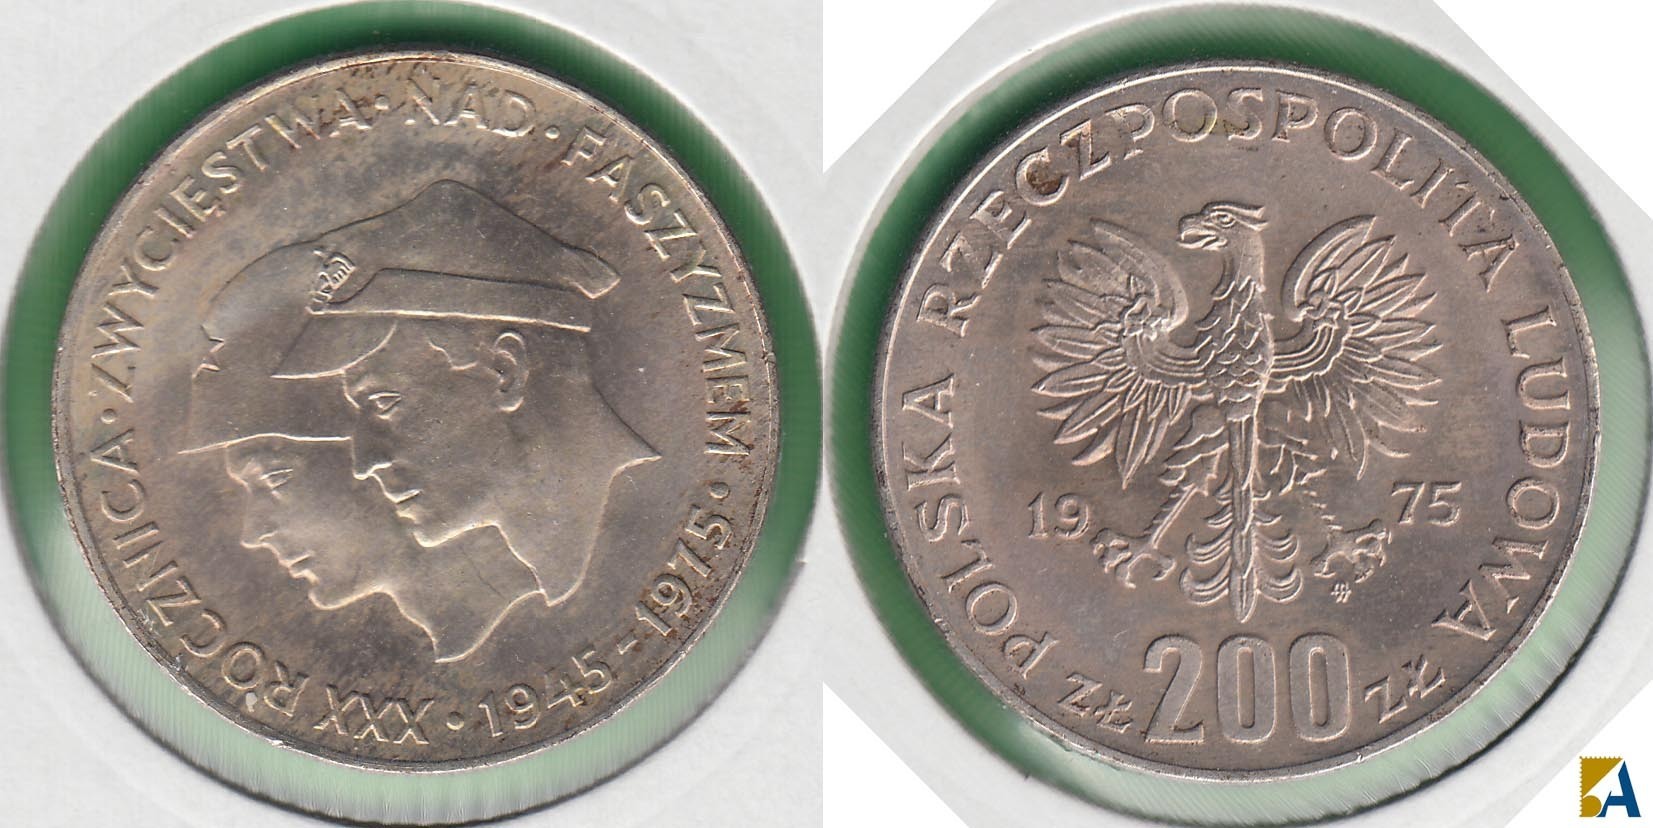 POLONIA - POLSKA. 200 ZLOTYCH DE 1975. PLATA 0.750.